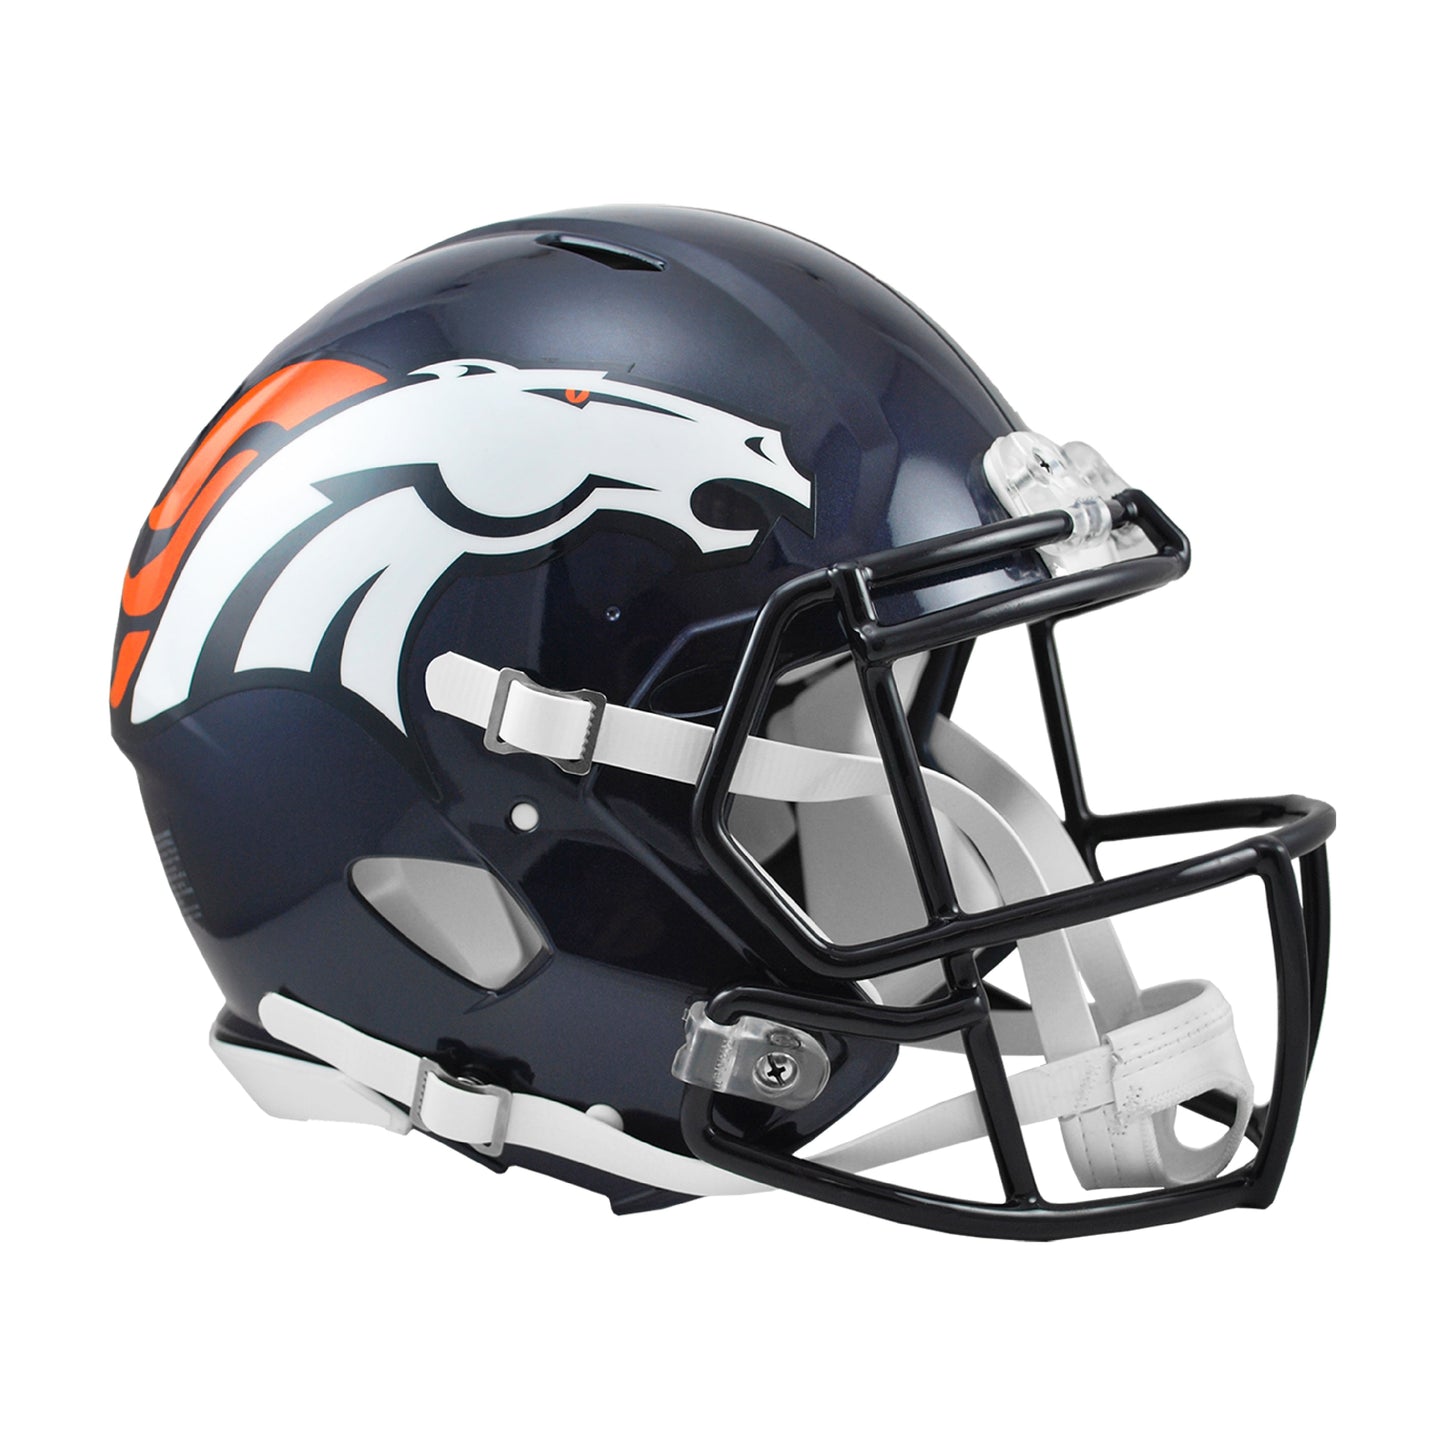 Denver Broncos Riddell Speed Full Size Authentic Football Helmet